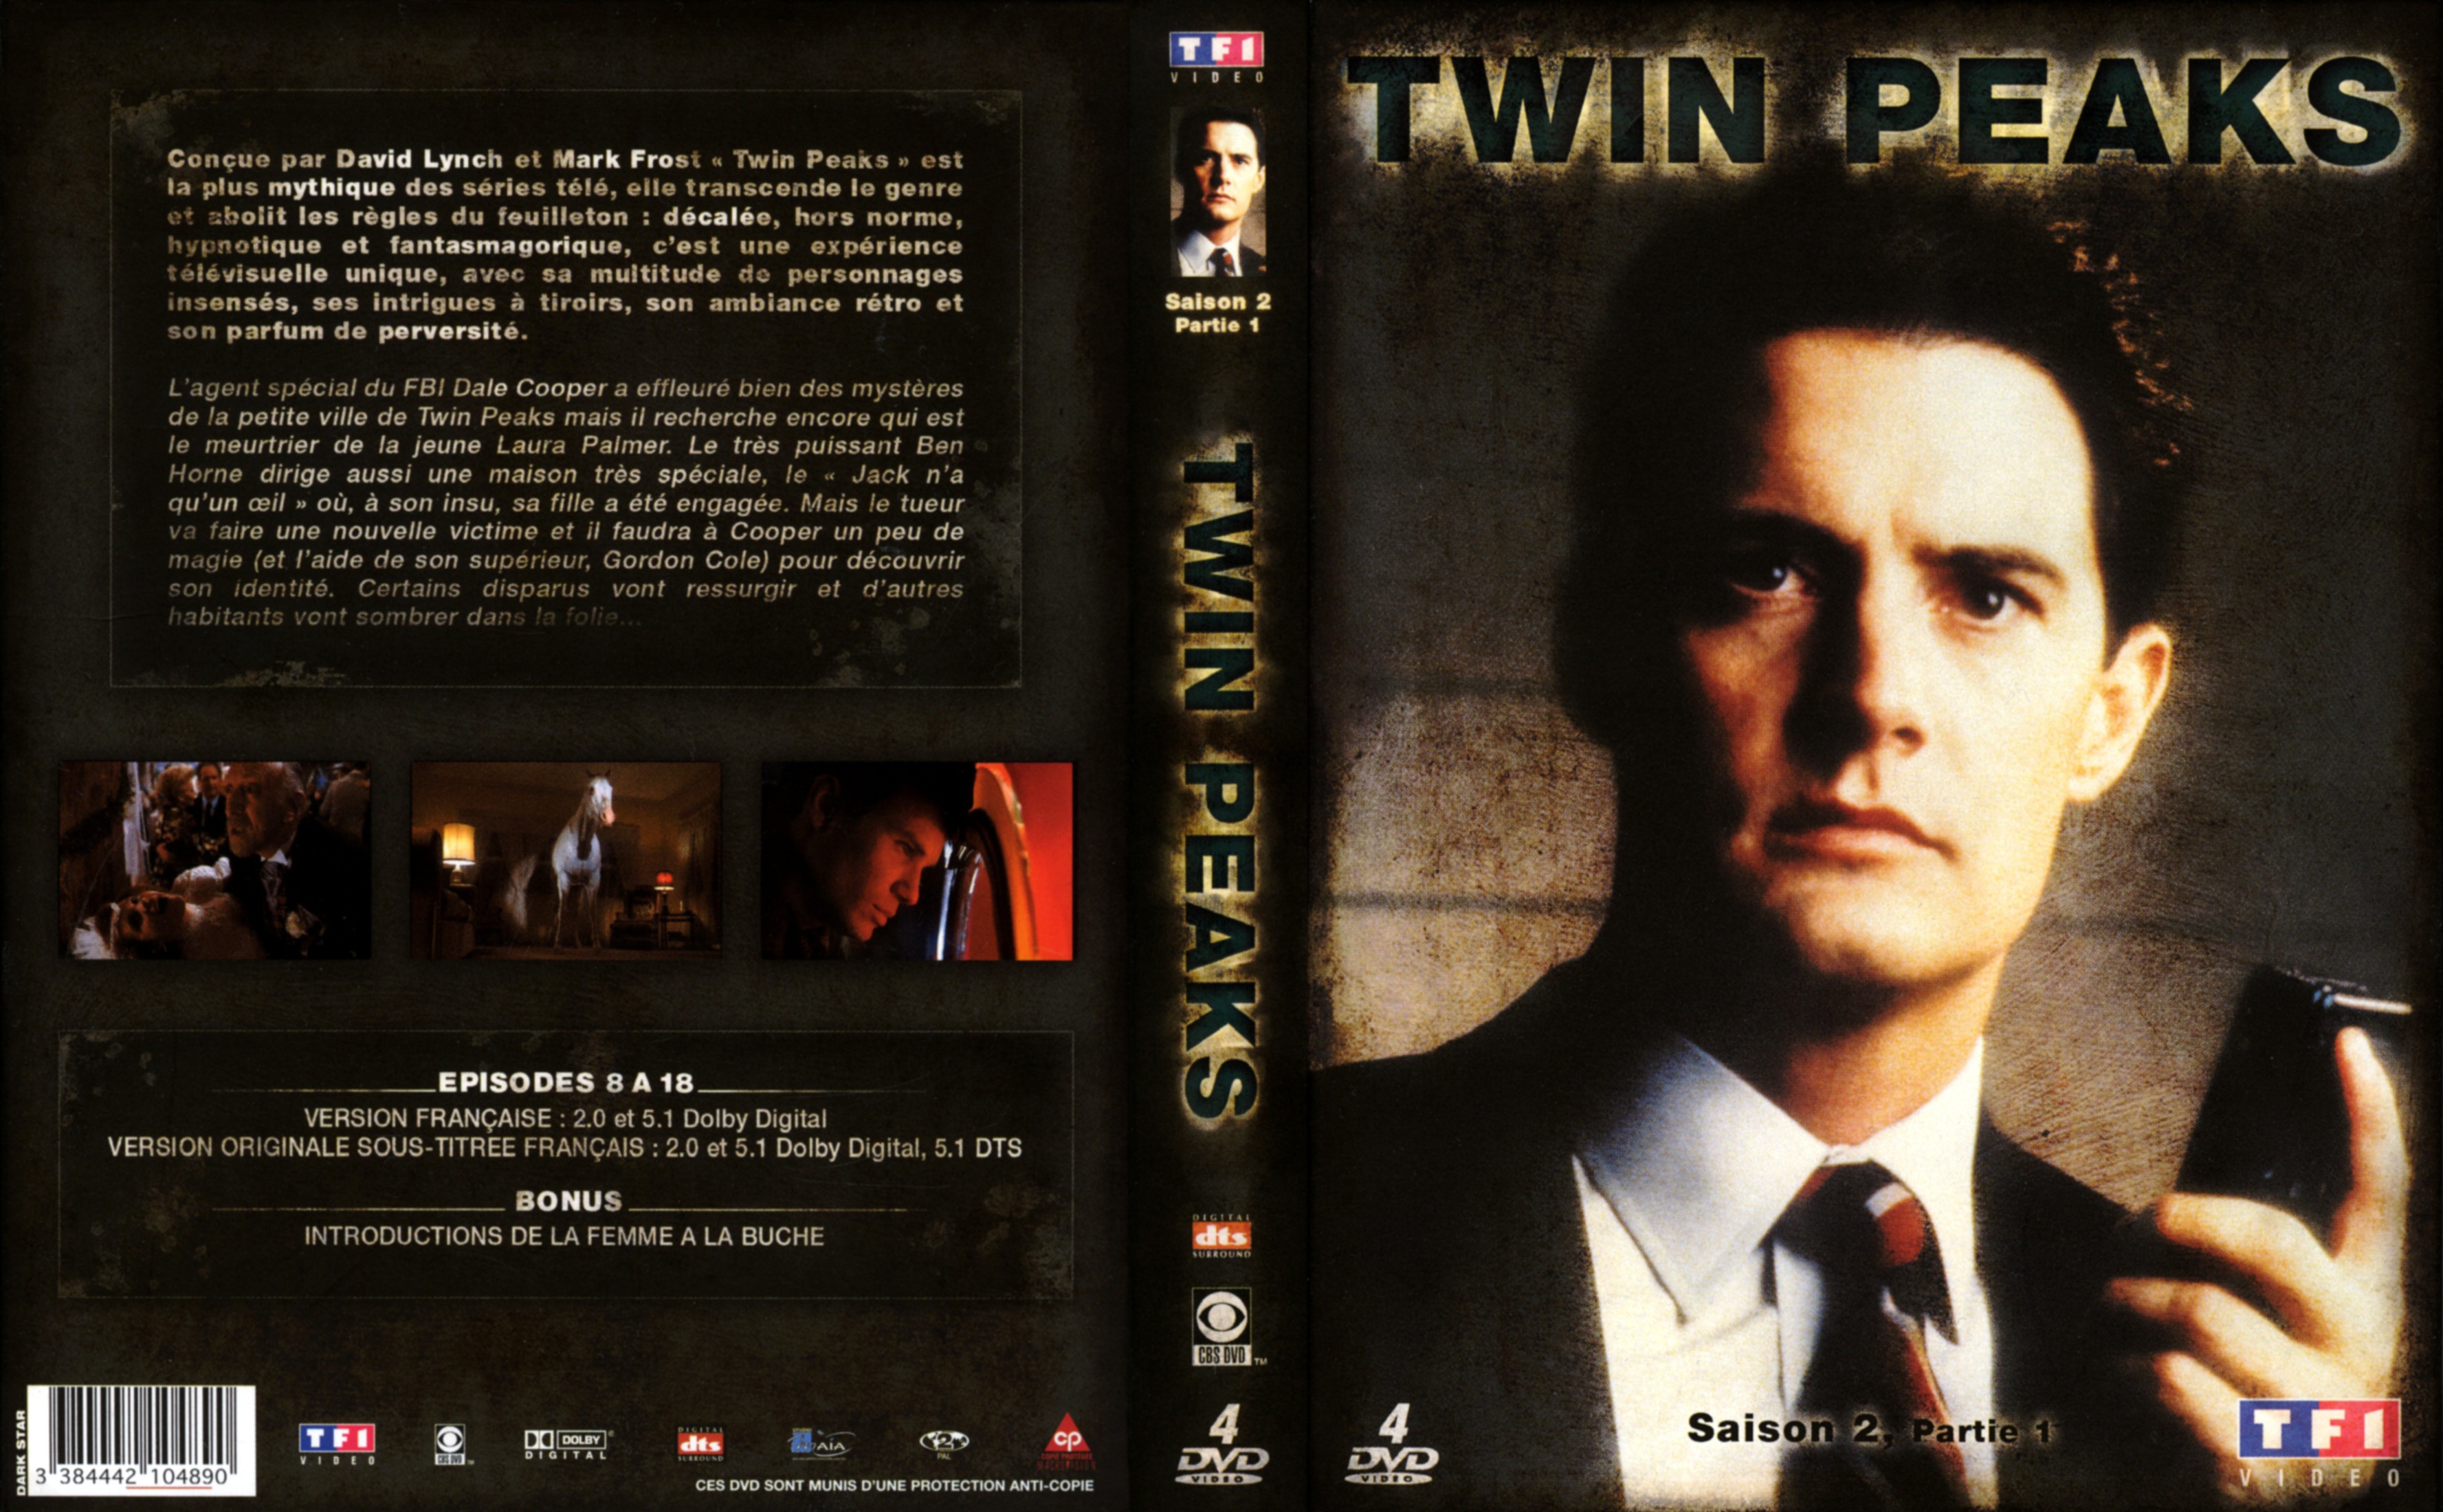 Jaquette DVD Twin peaks saison 2 Partie 1